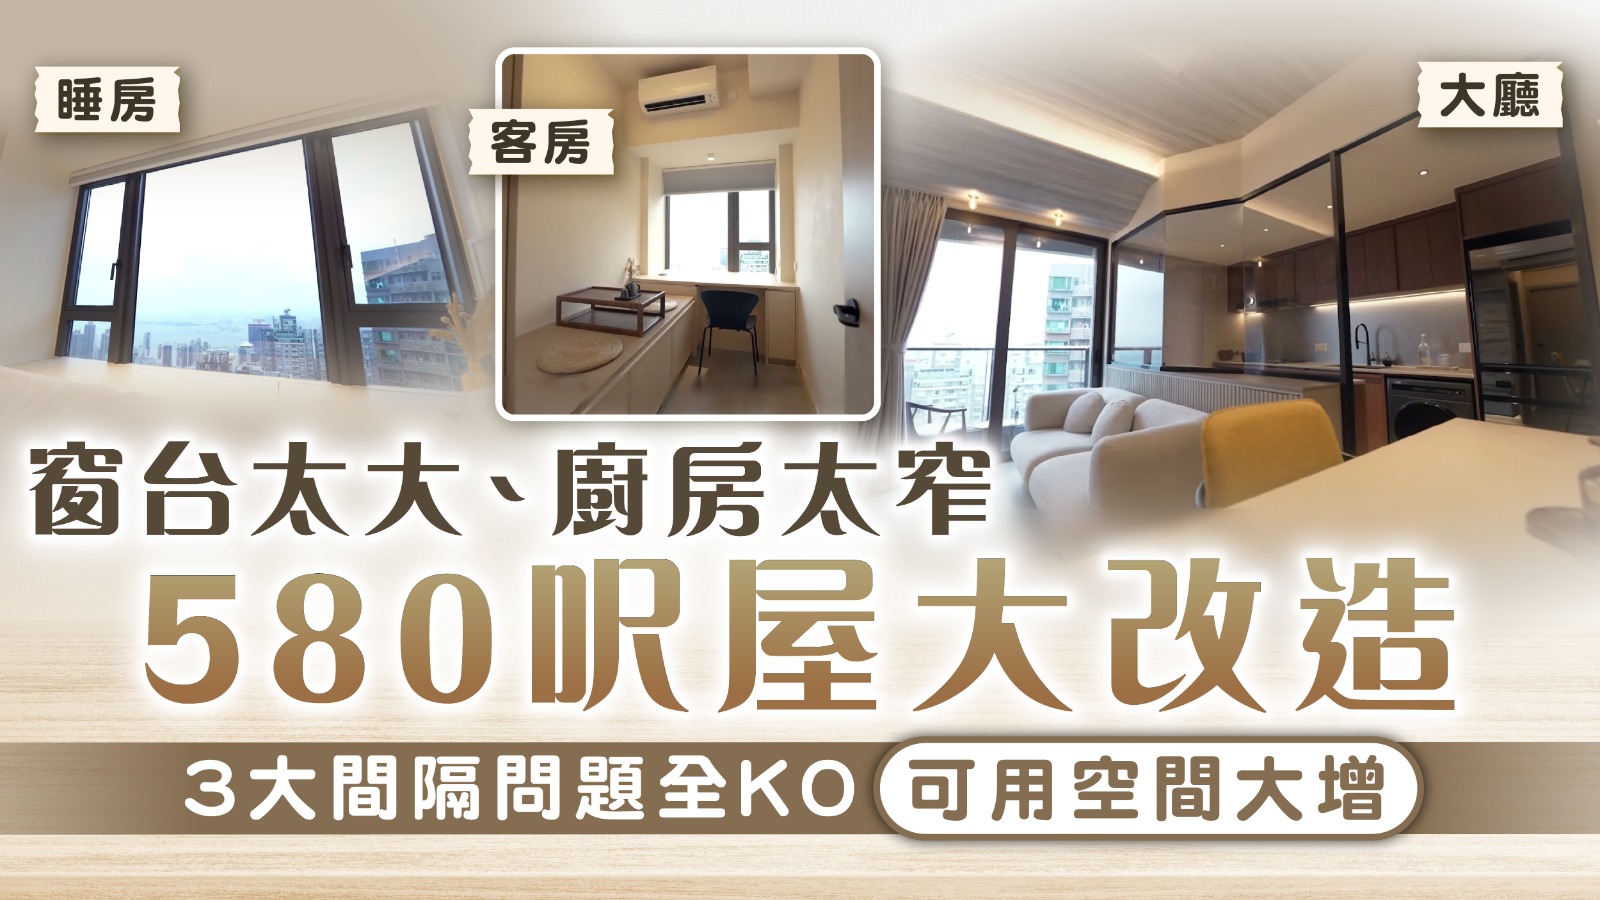 香港奇則3｜窗台太大、廚房太窄 580呎屋大改造 3大間隔問題全KO可用空間大增